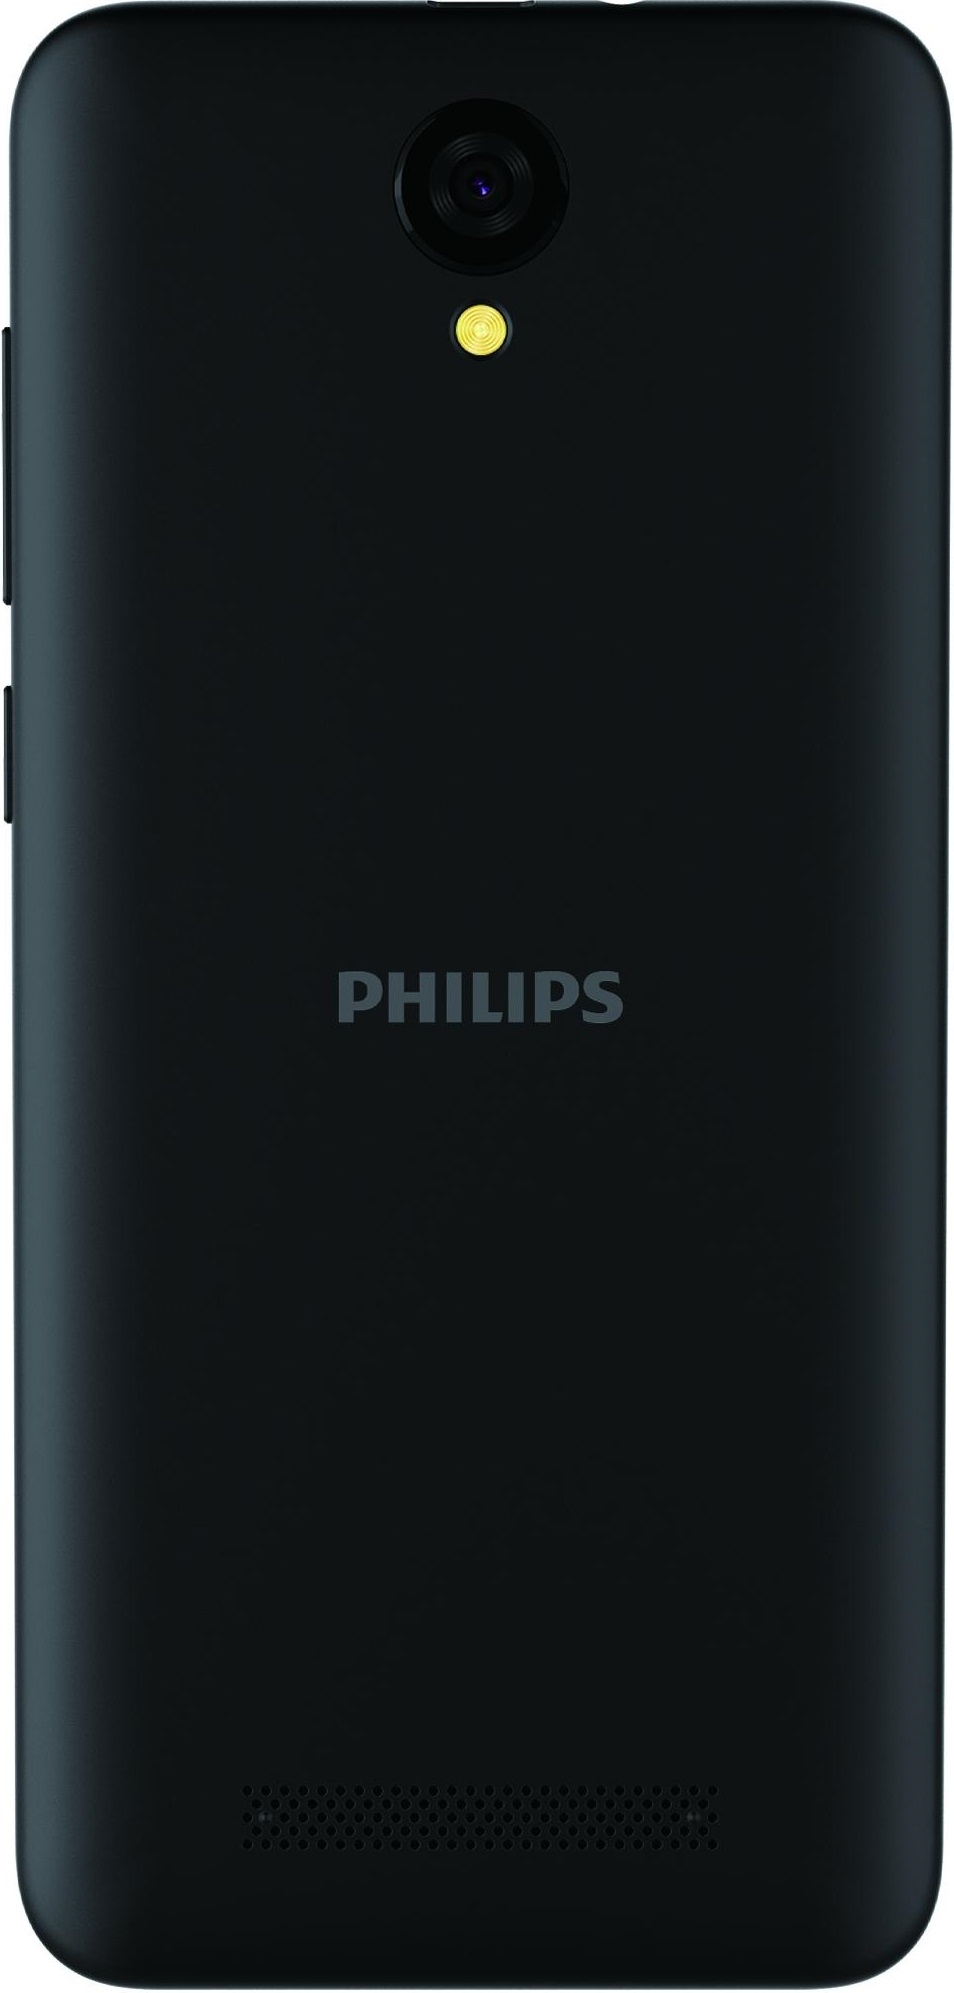 Philips S260